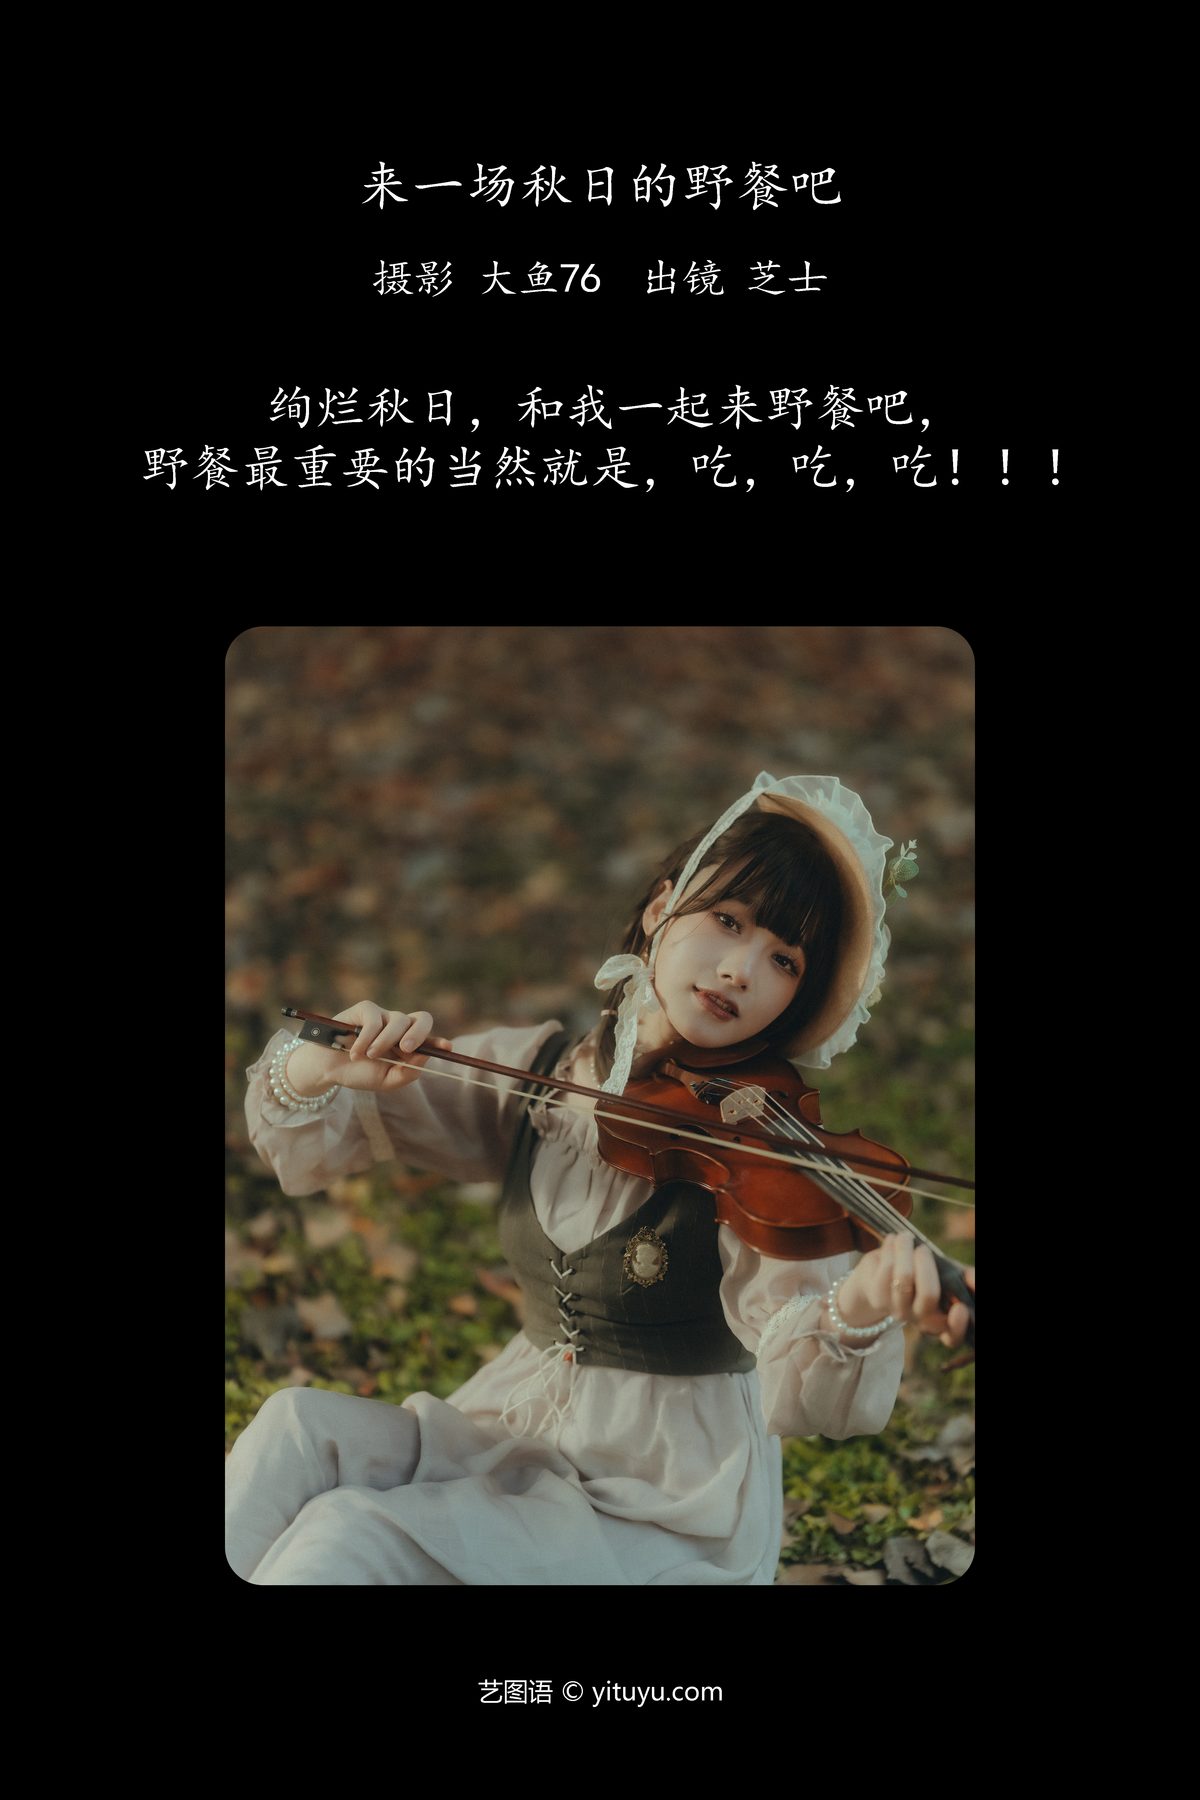 YiTuYu艺图语 Vol 6132 Zhi Shi 0002 6620502580.jpg